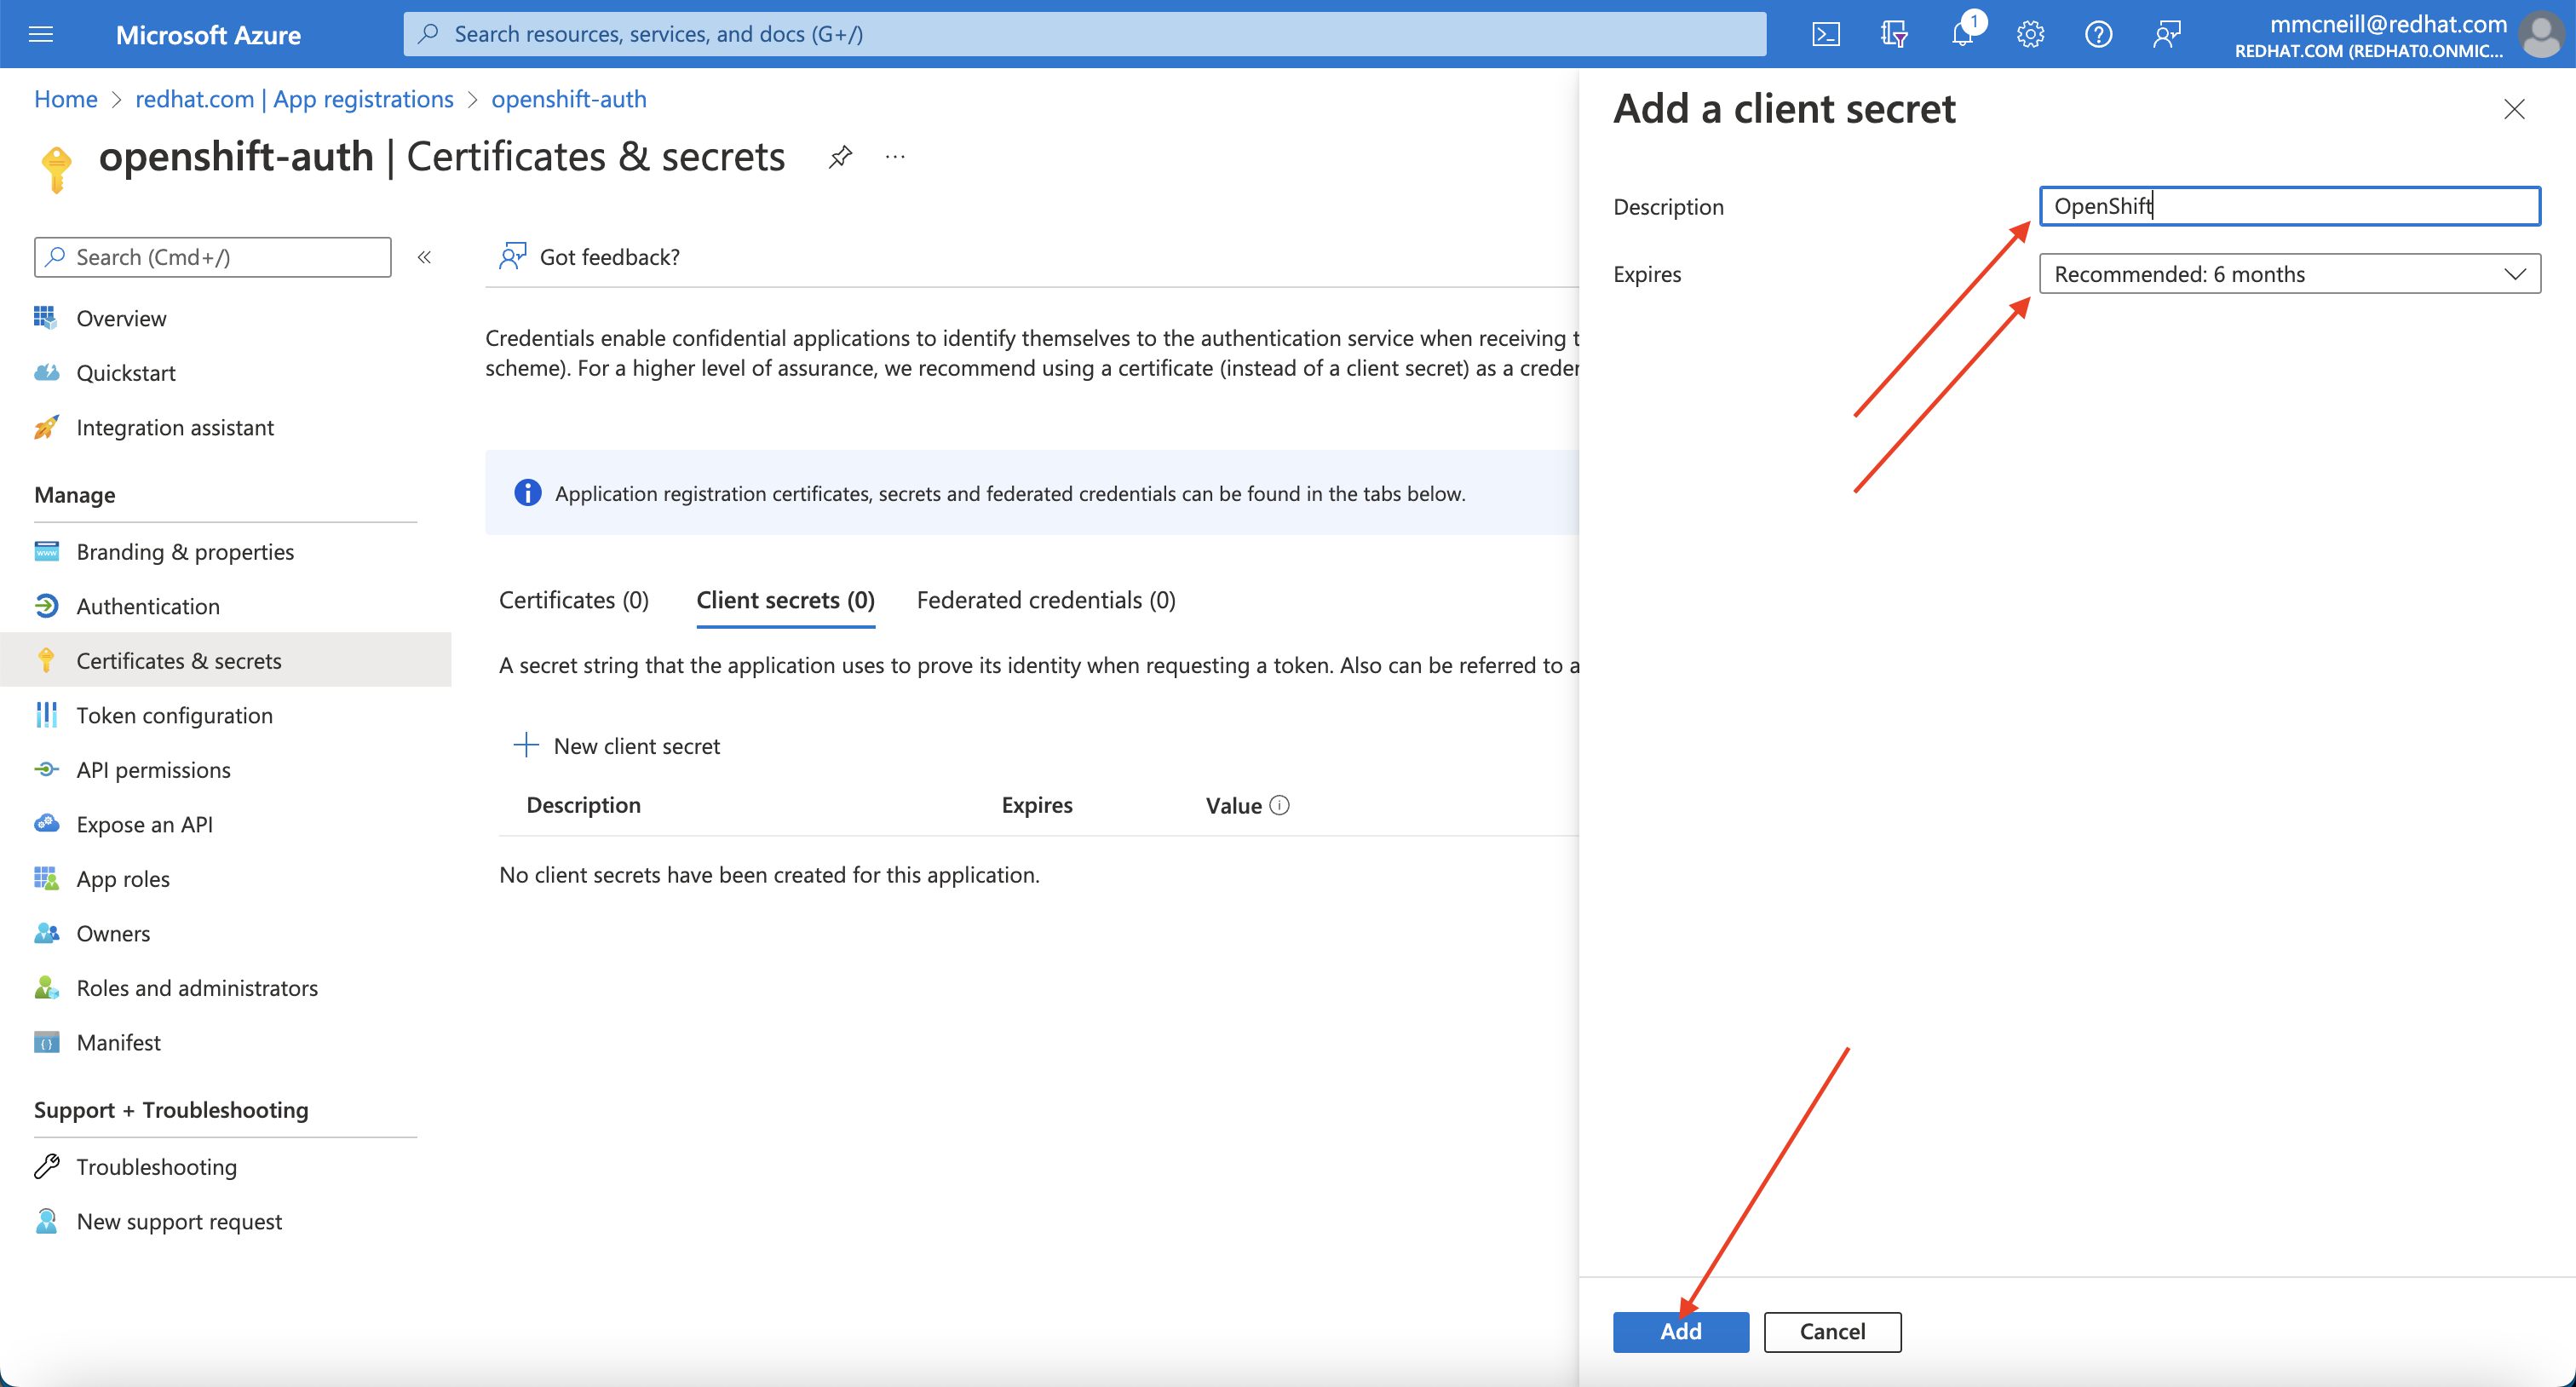 Azure Portal - Add a Client Secret page